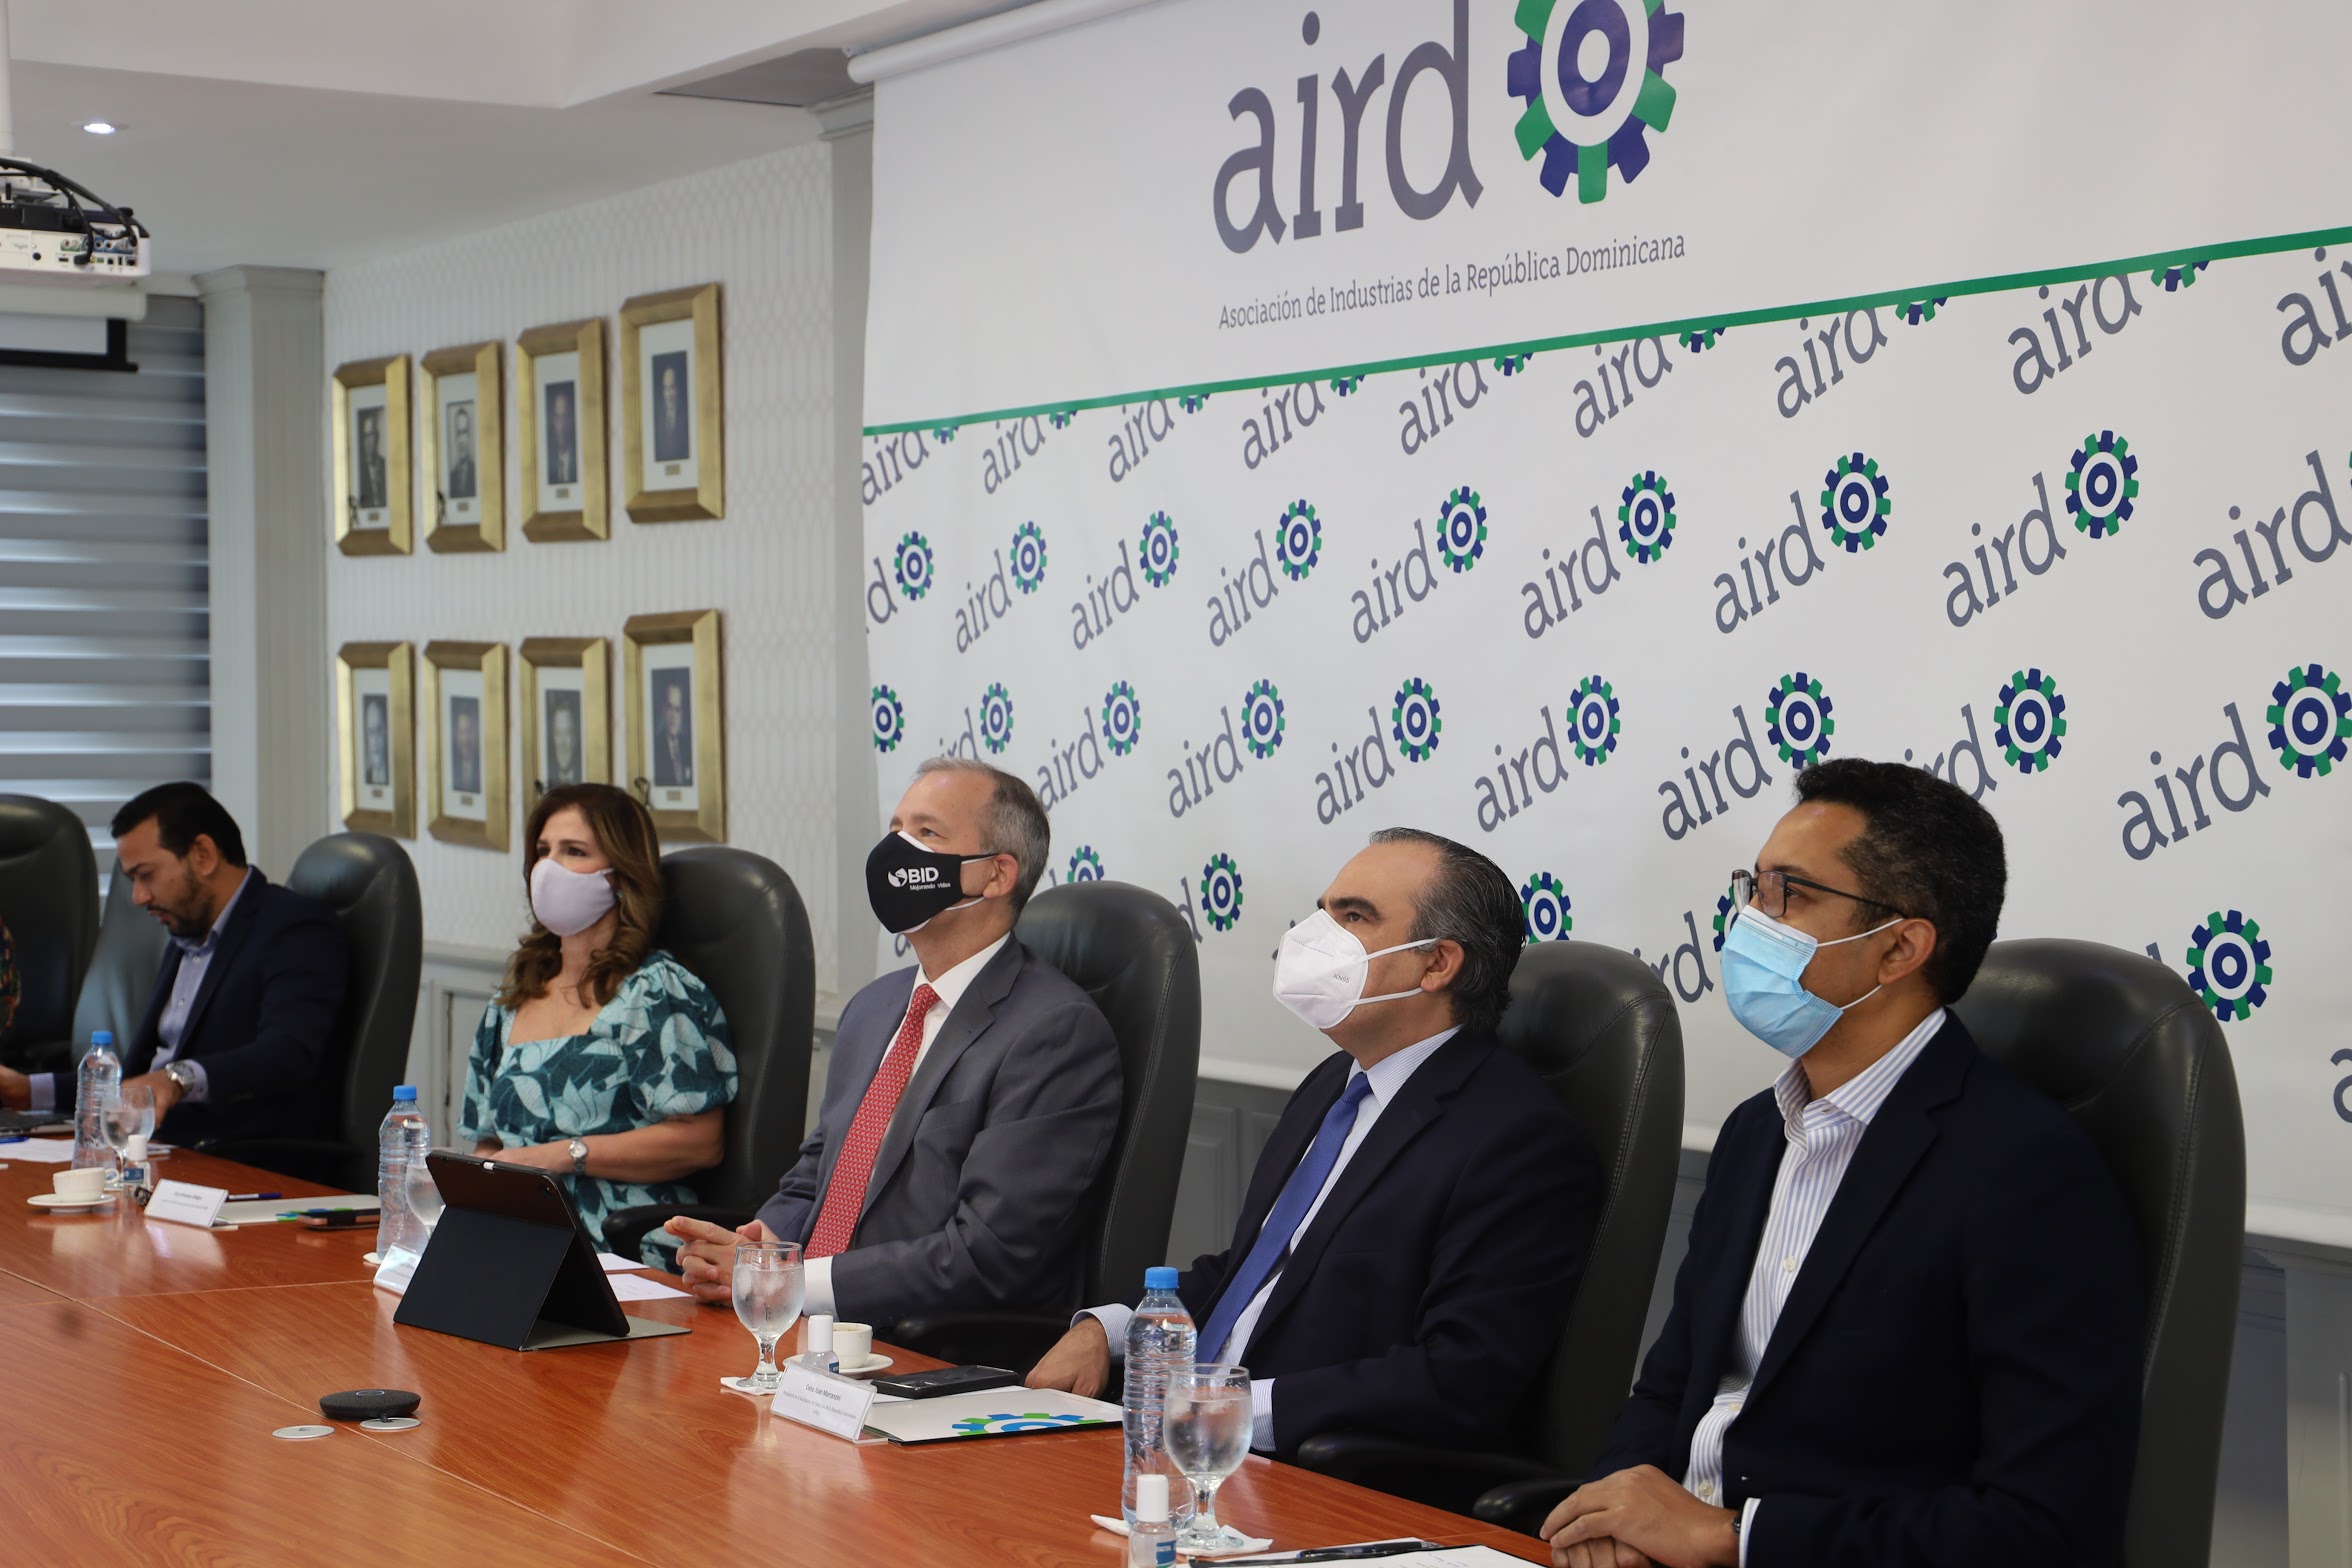 AIRD invita a apoyar el X Censo de Población y Vivienda